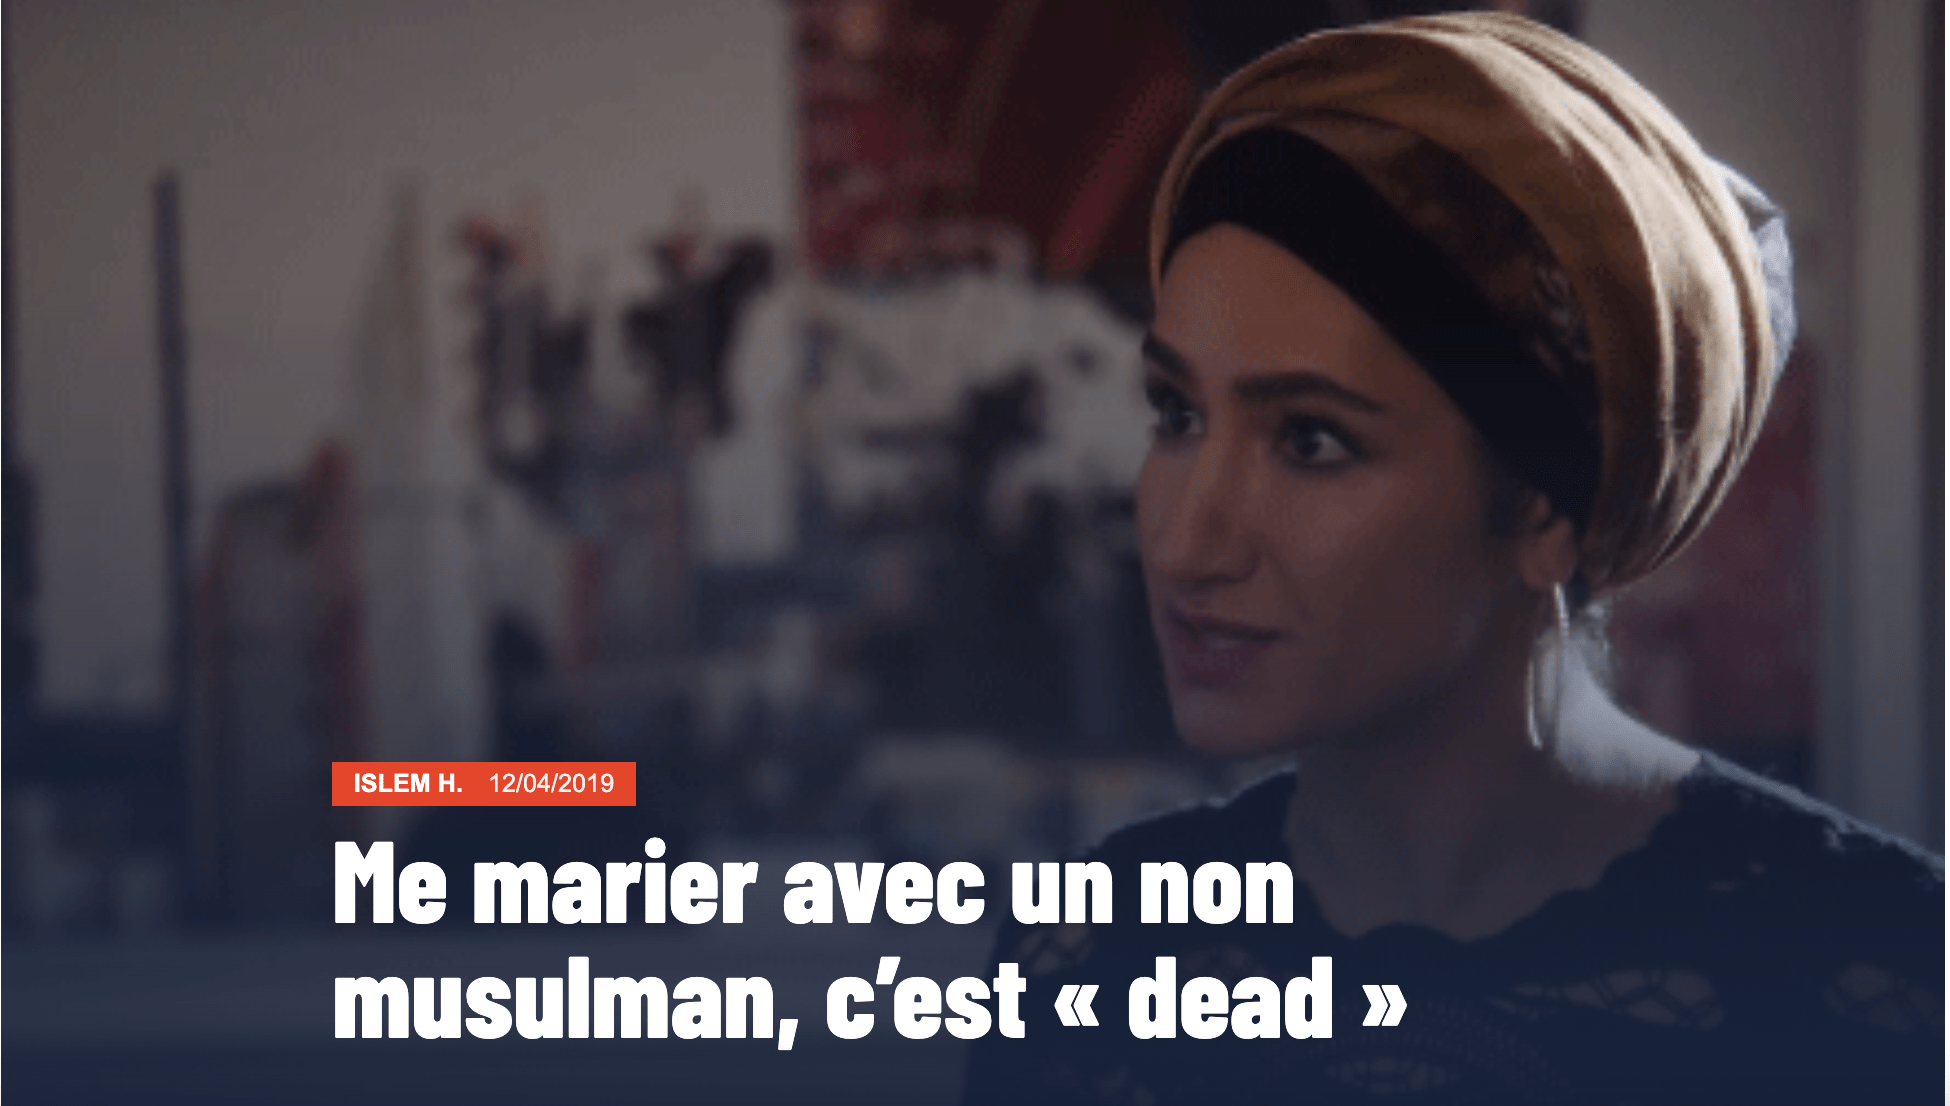 Capture d'écran de la miniature de l'article "Me marier avec un non musulman, c'est dead". L'image est extraite de la série Bold Type. 